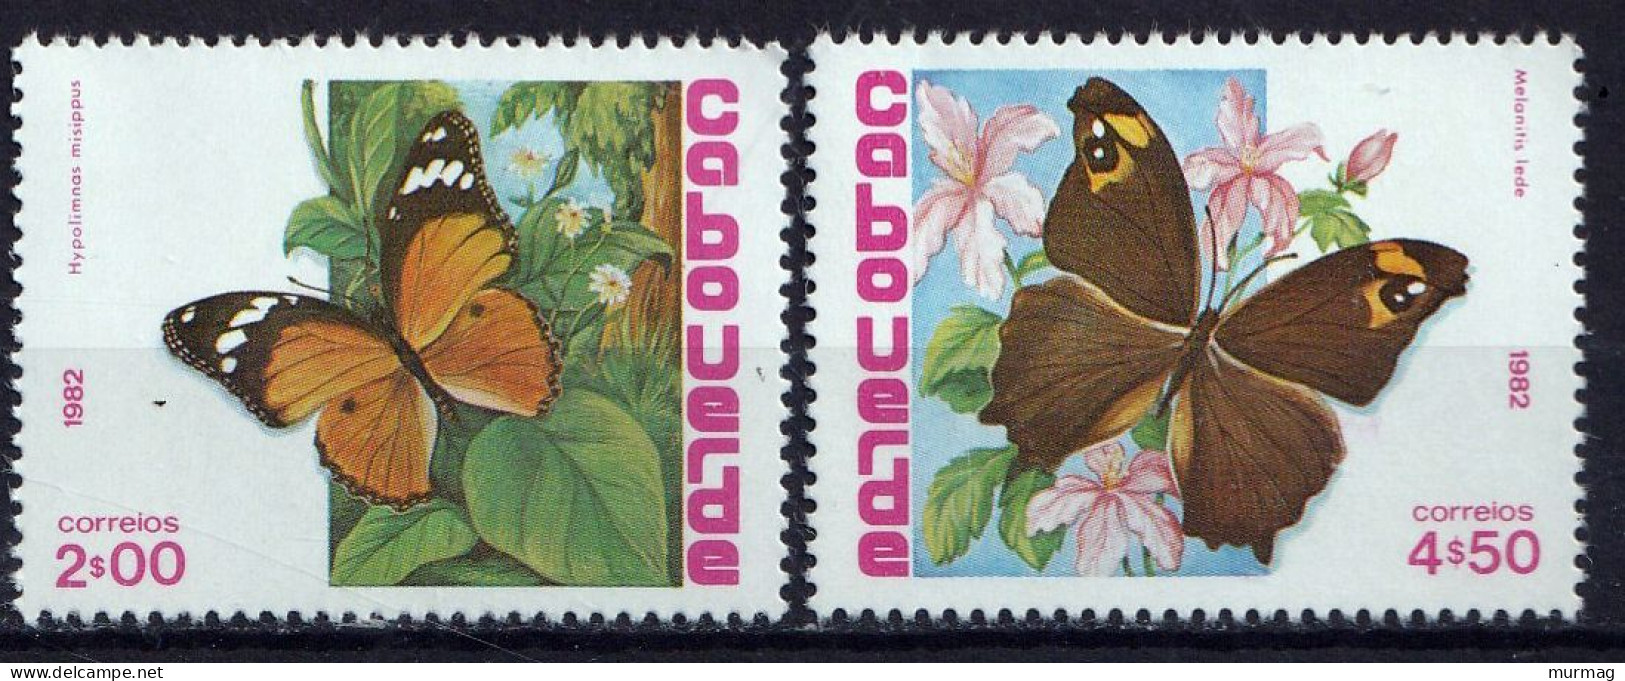 CAP VERT - Faune, Papillons - Y&T N° 465-470 - 1982  - MNH - Cap Vert